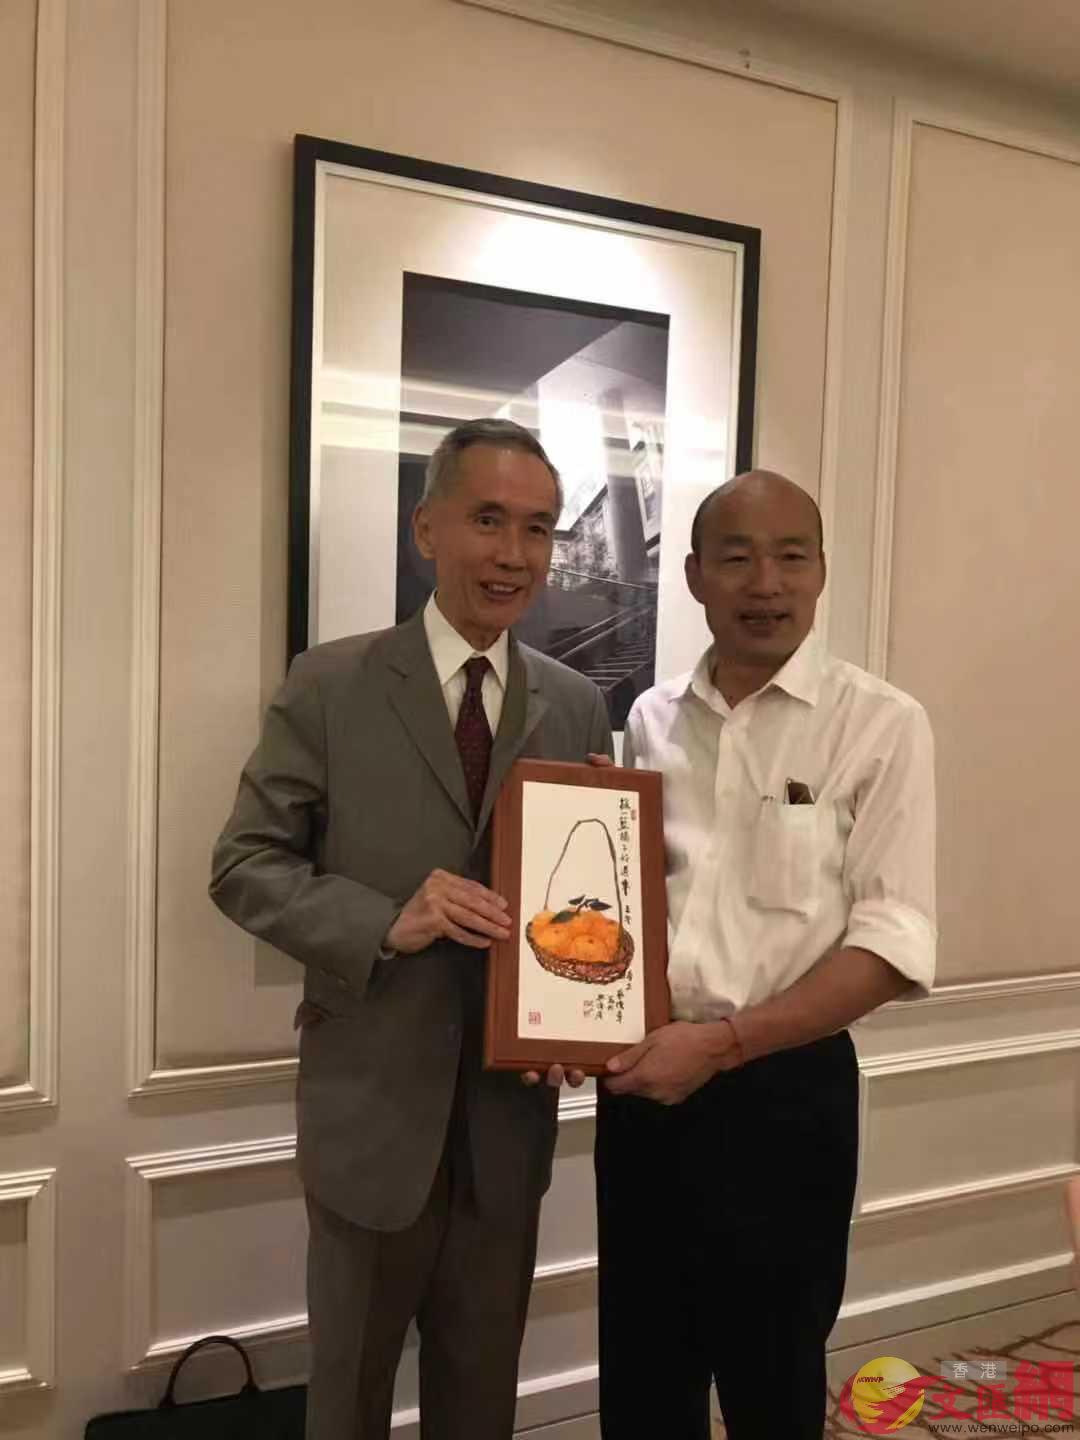 2019年2月26日A黃志祥在新加坡設宴歡迎韓國瑜C圖為黃志祥(左)向韓國瑜贈送禮品(全媒體資料圖片)